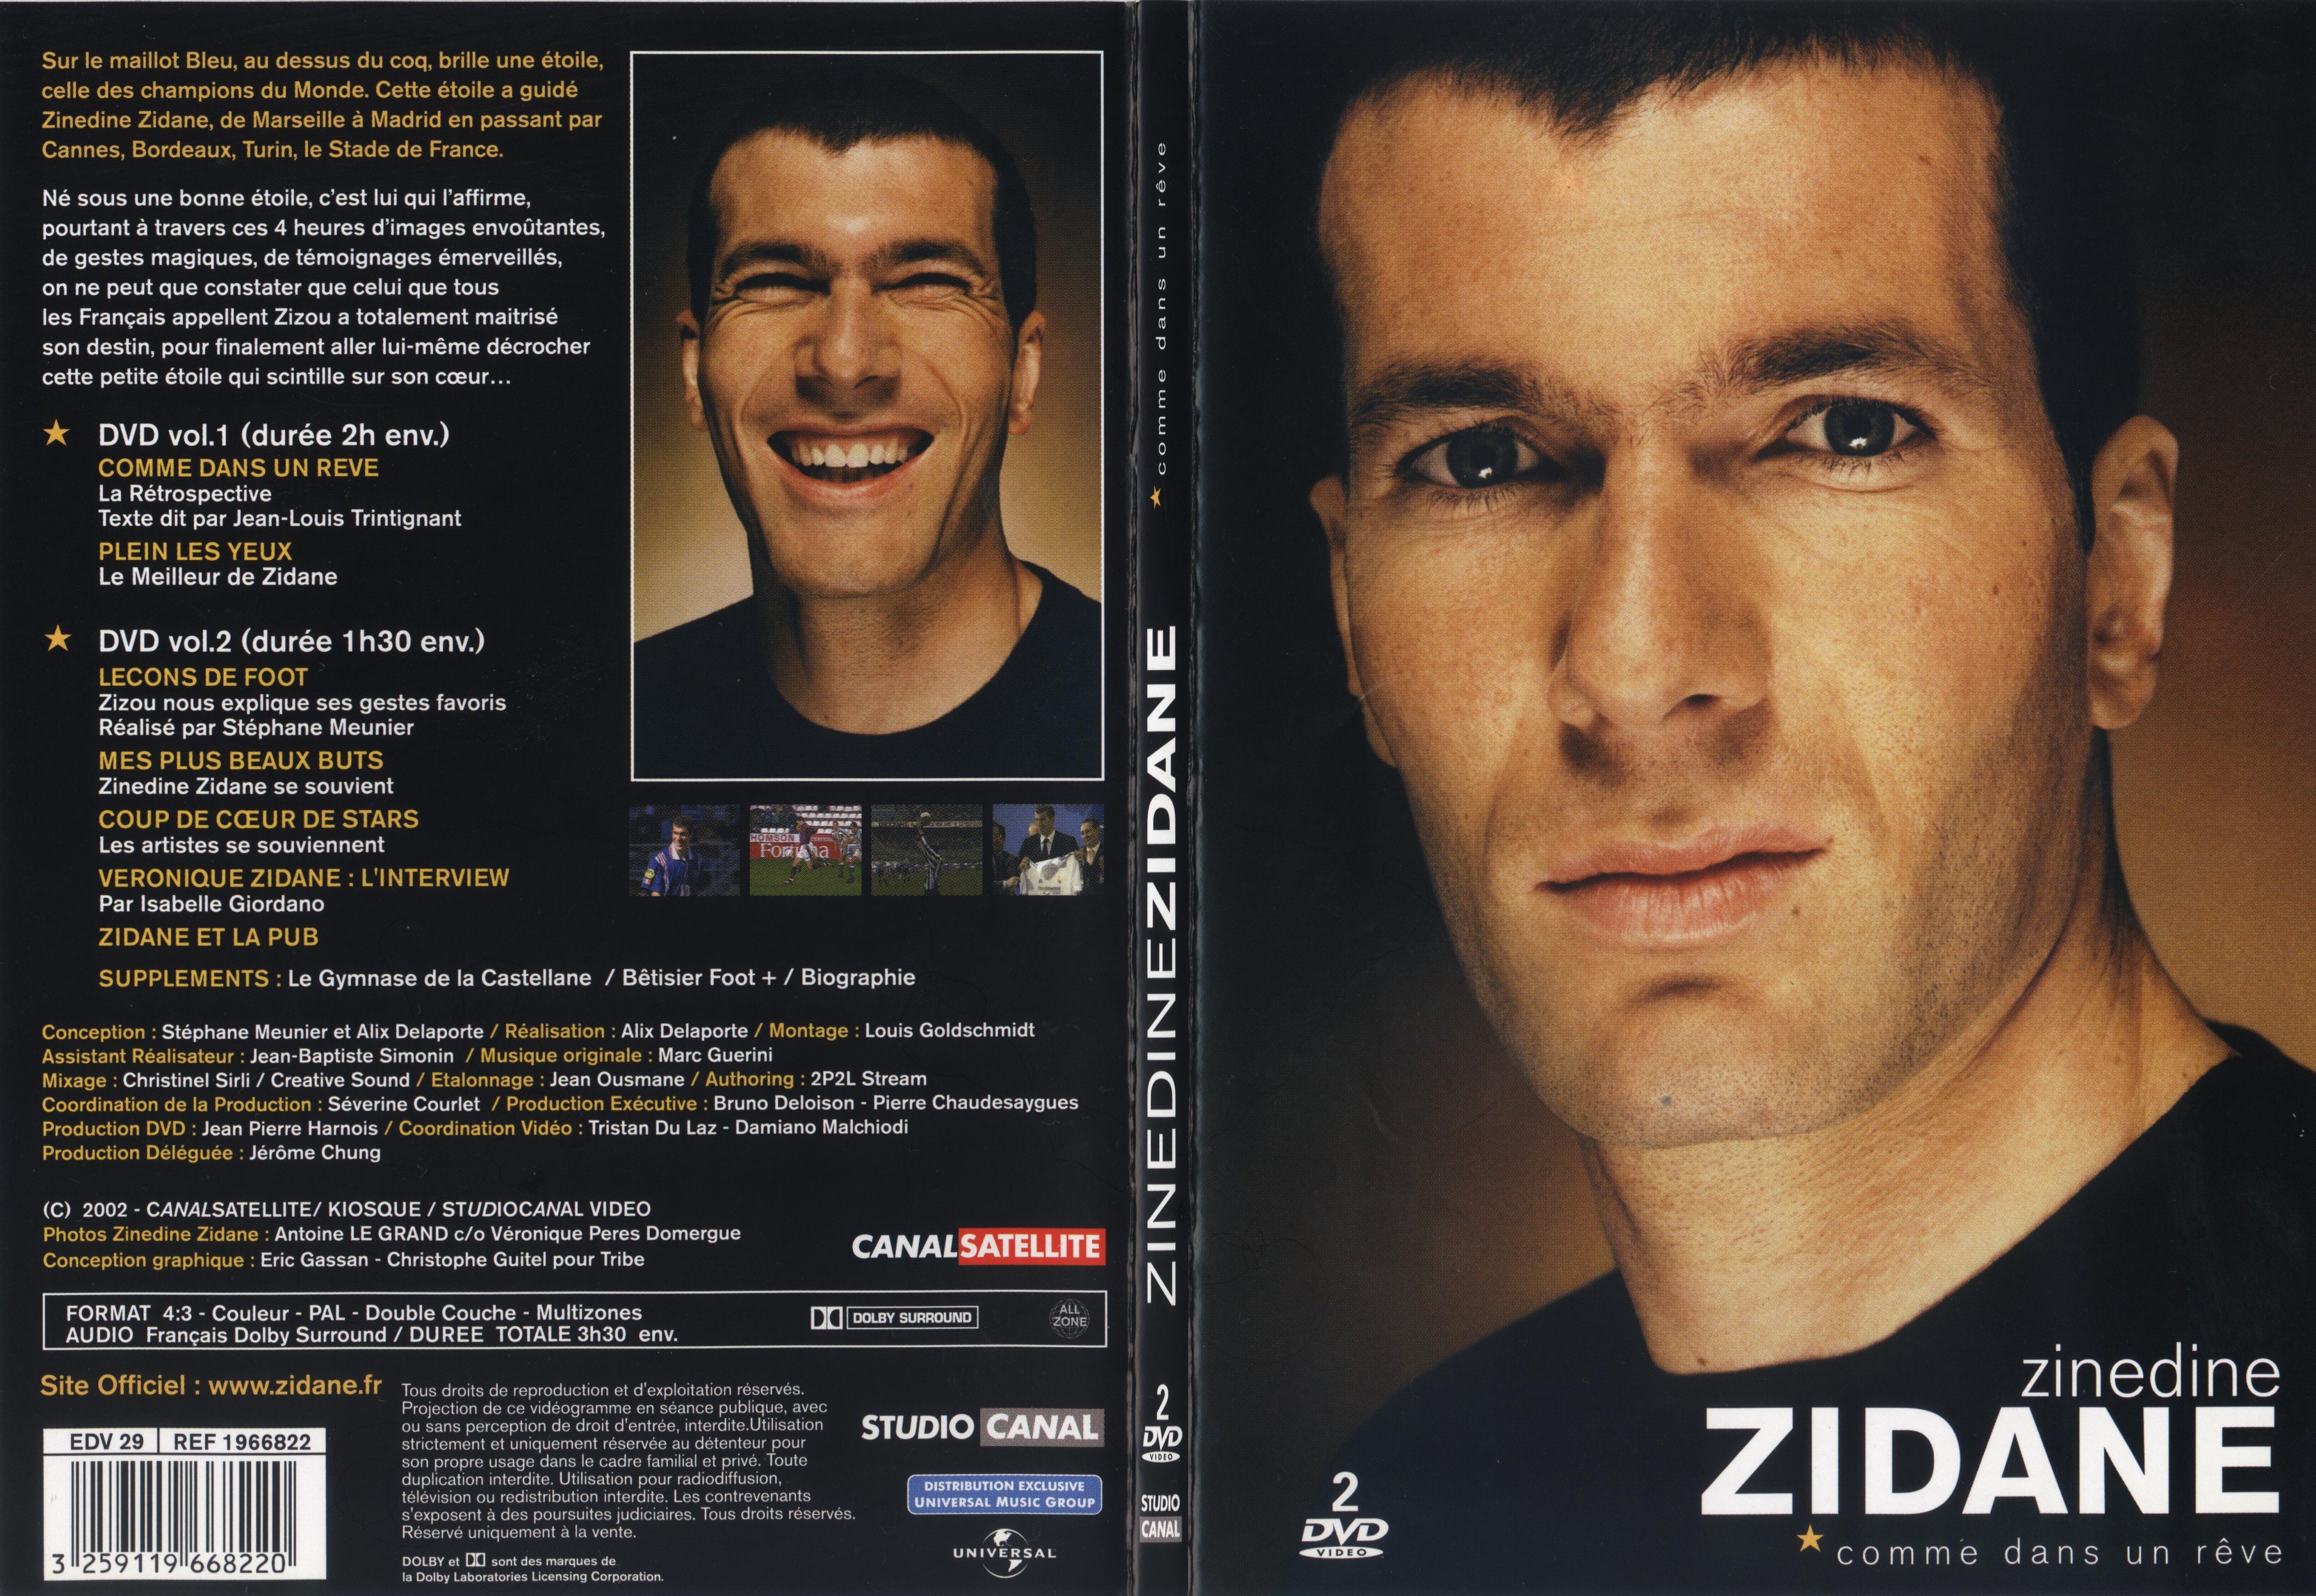 Jaquette DVD Zinedine Zidane Comme dans un reve - SLIM